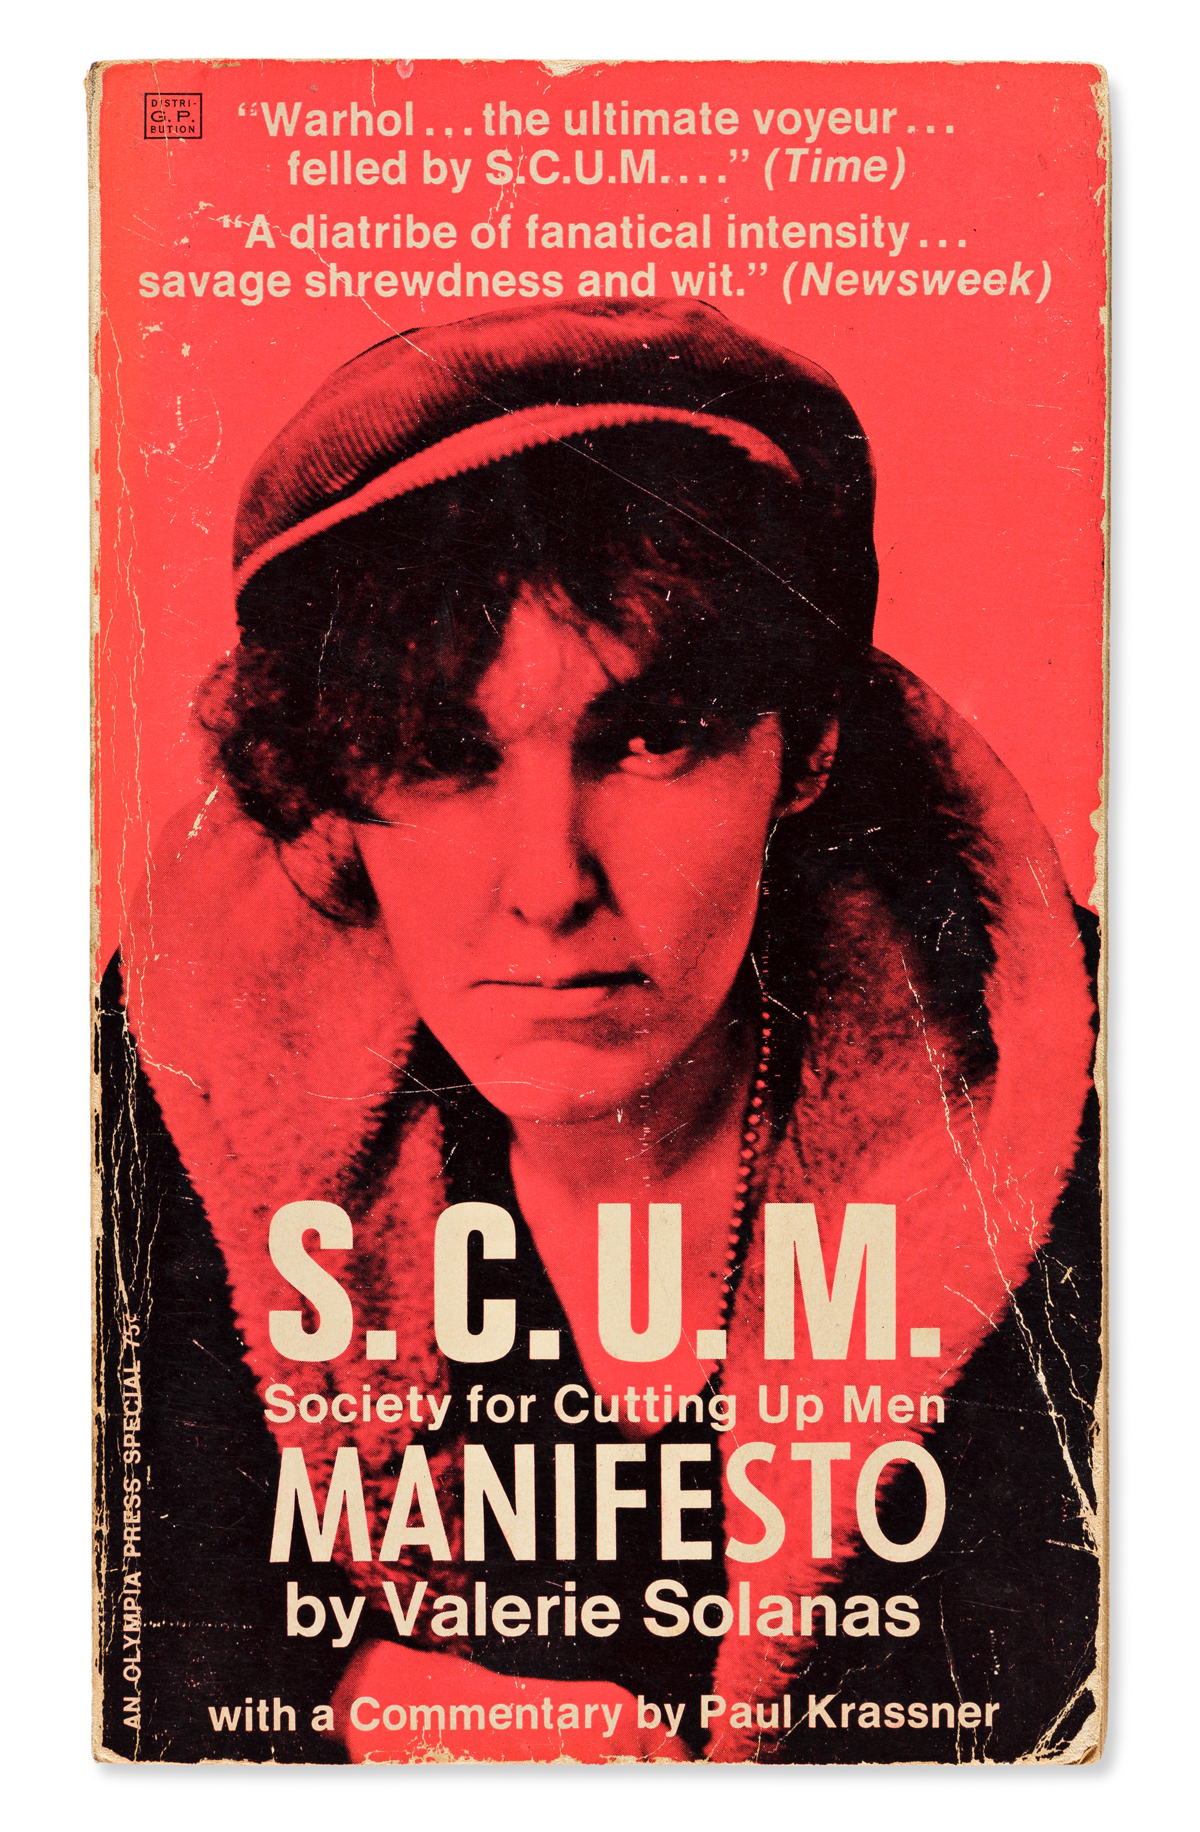 SCUM Manifesto 